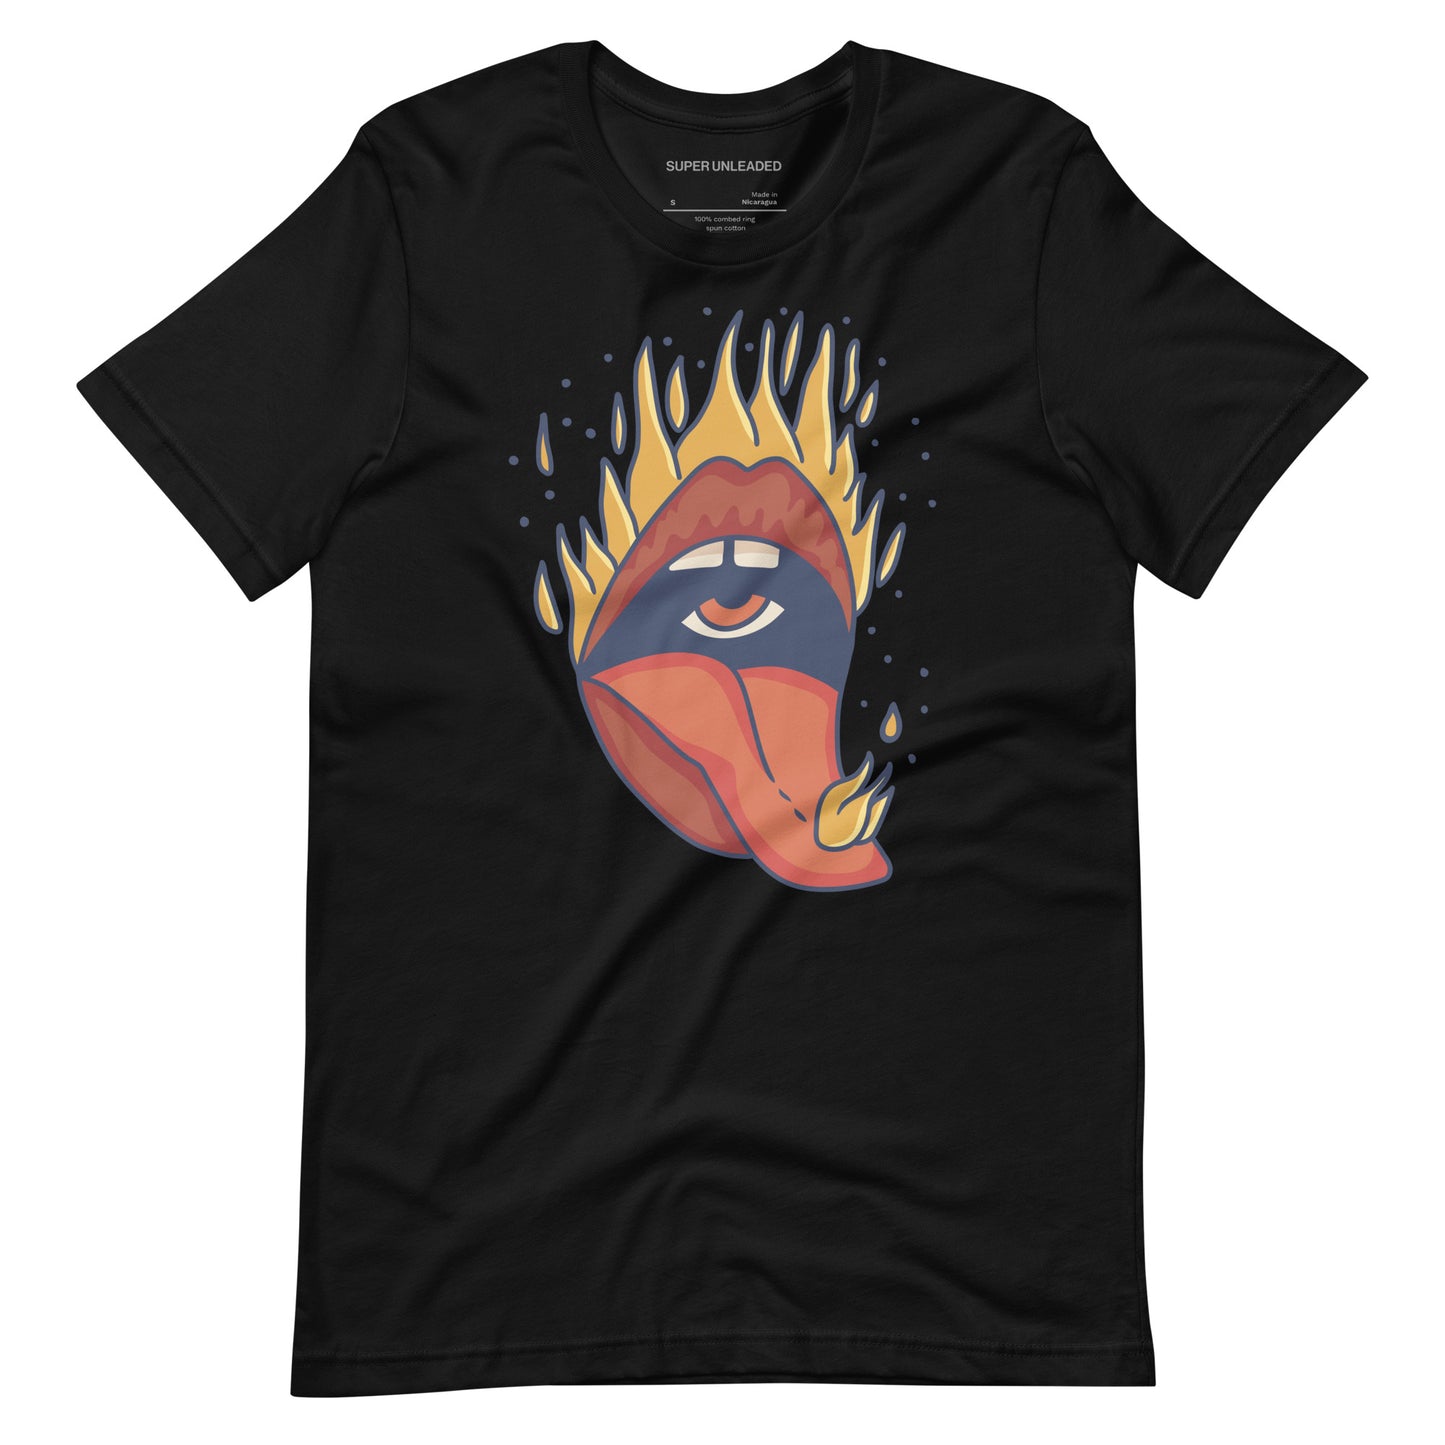 Burning Lips T-shirt